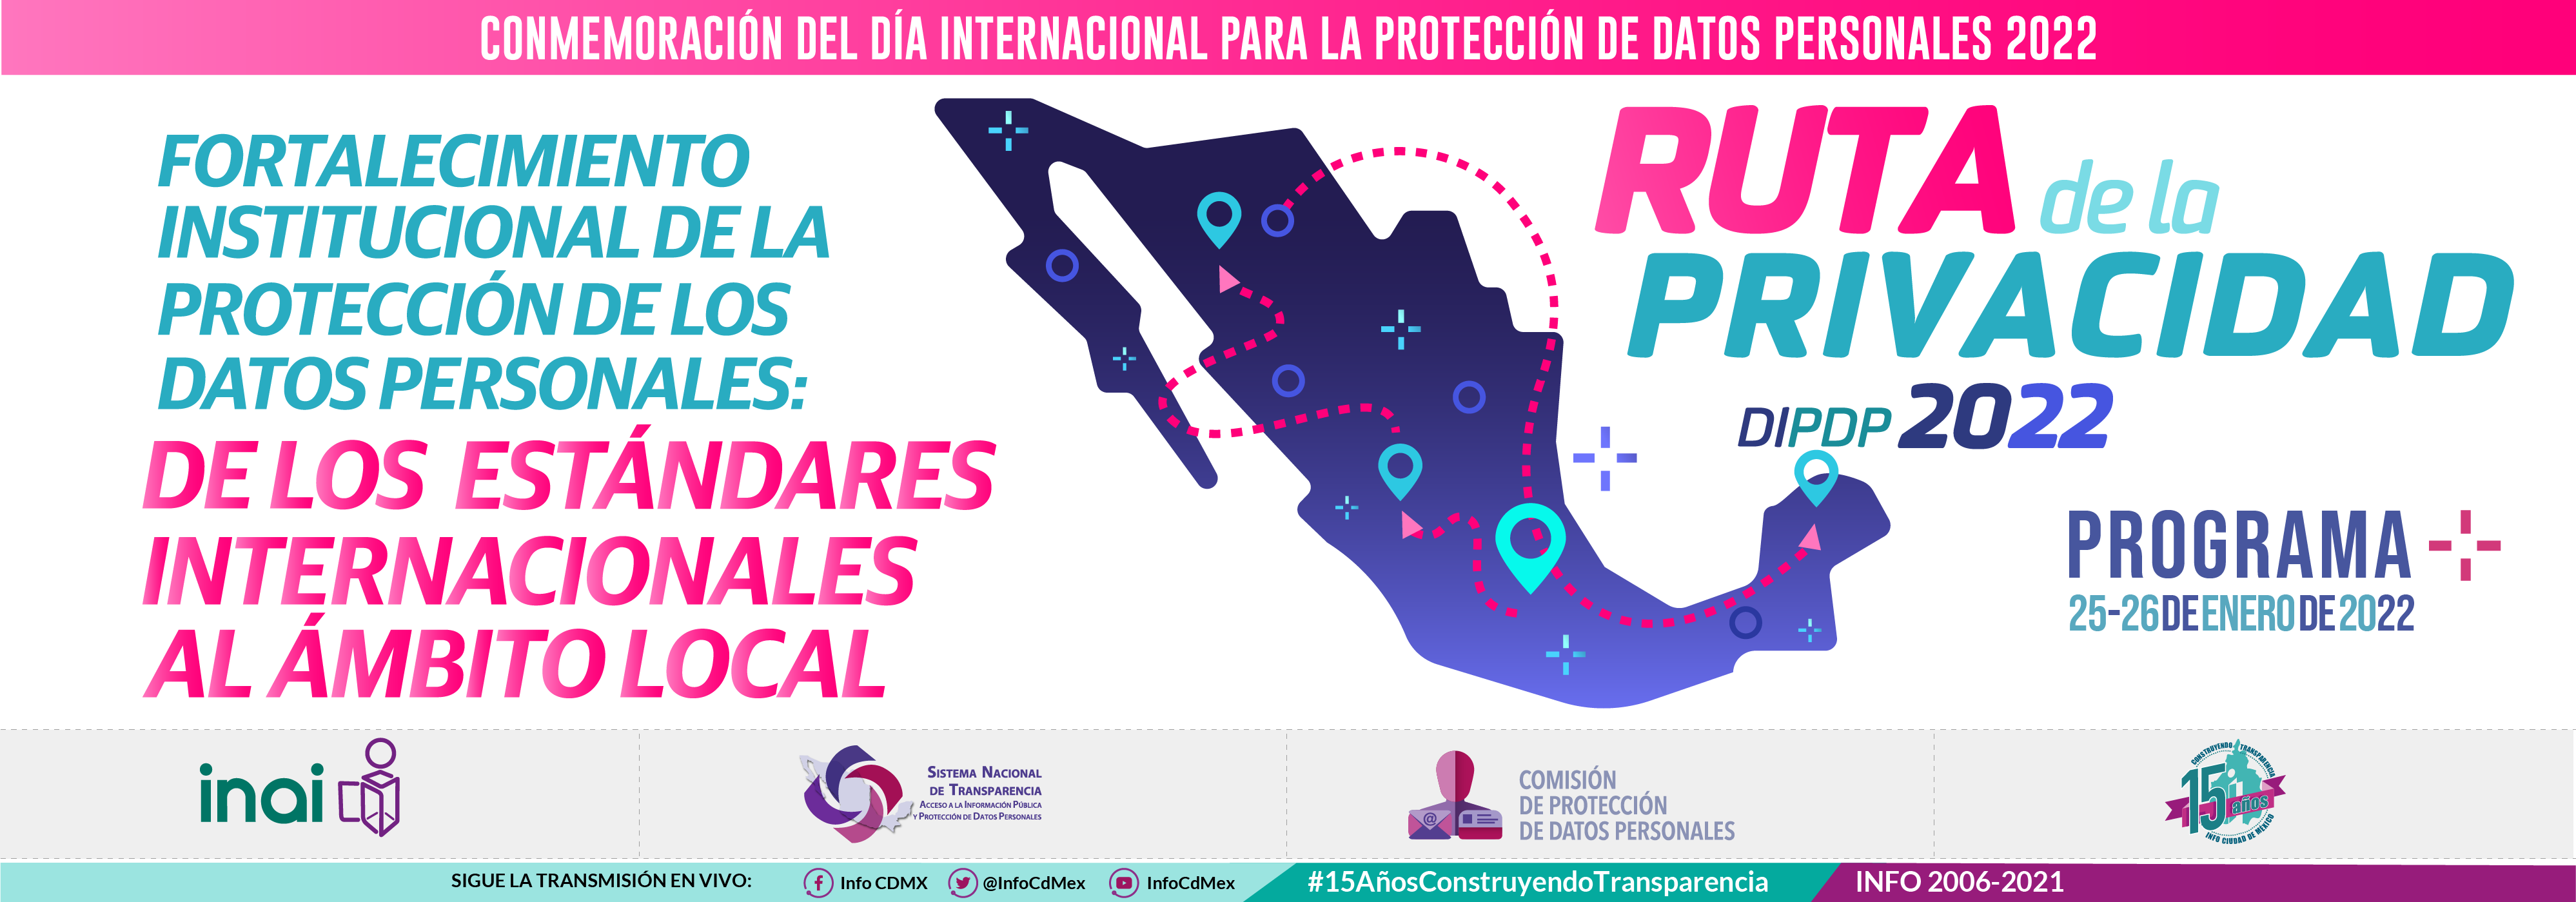 Programa Día Internacional de la Protección de los Datos Personales 